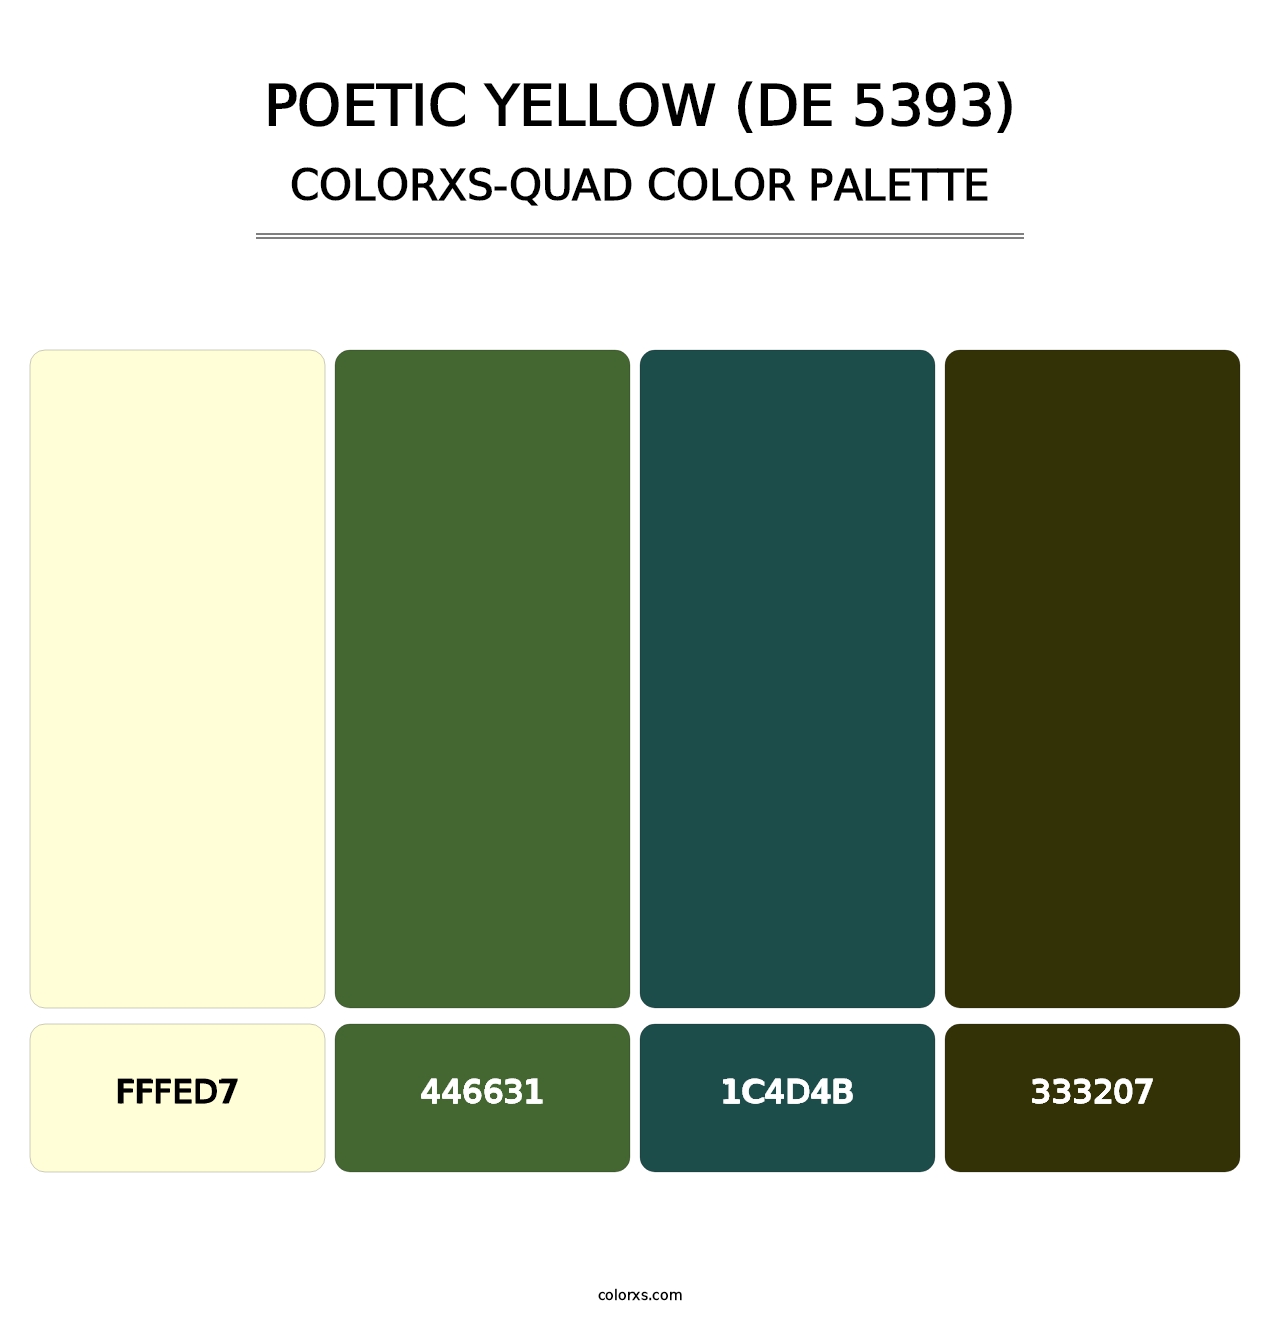 Poetic Yellow (DE 5393) - Colorxs Quad Palette